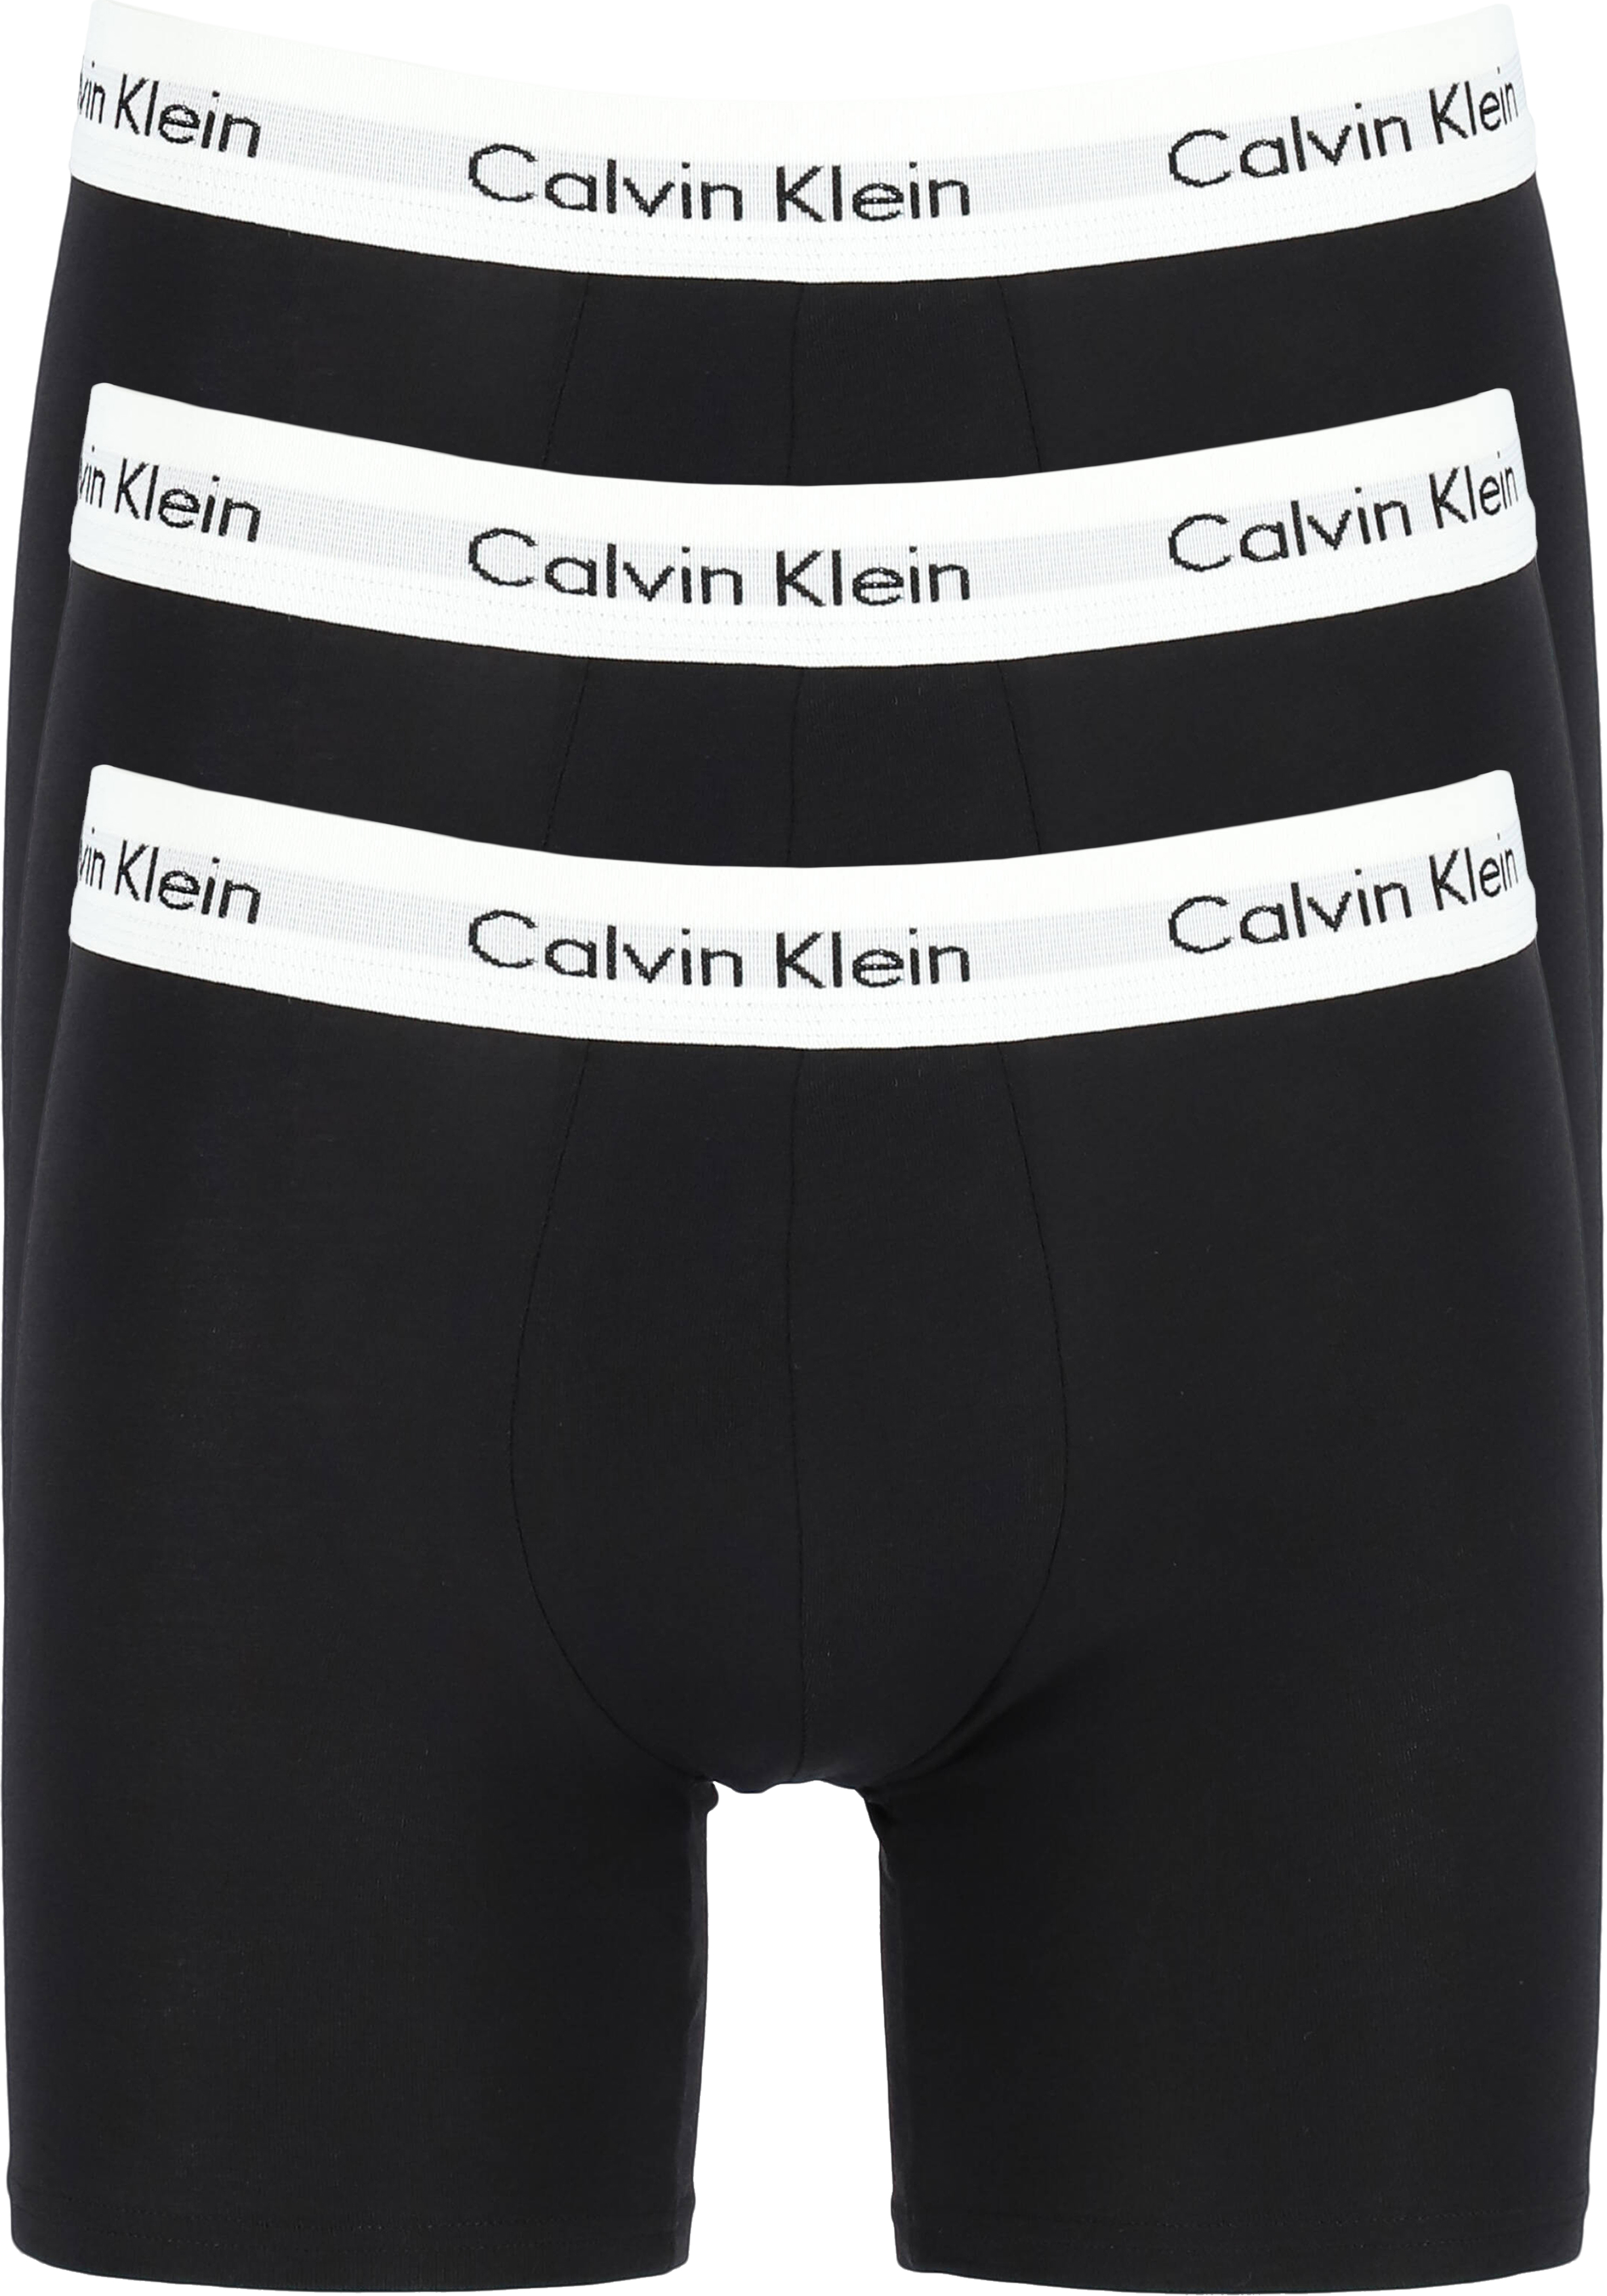 Calvin Klein Cotton Stretch boxer brief (3-pack), heren boxers extra -  Nieuwe voorjaarscollectie